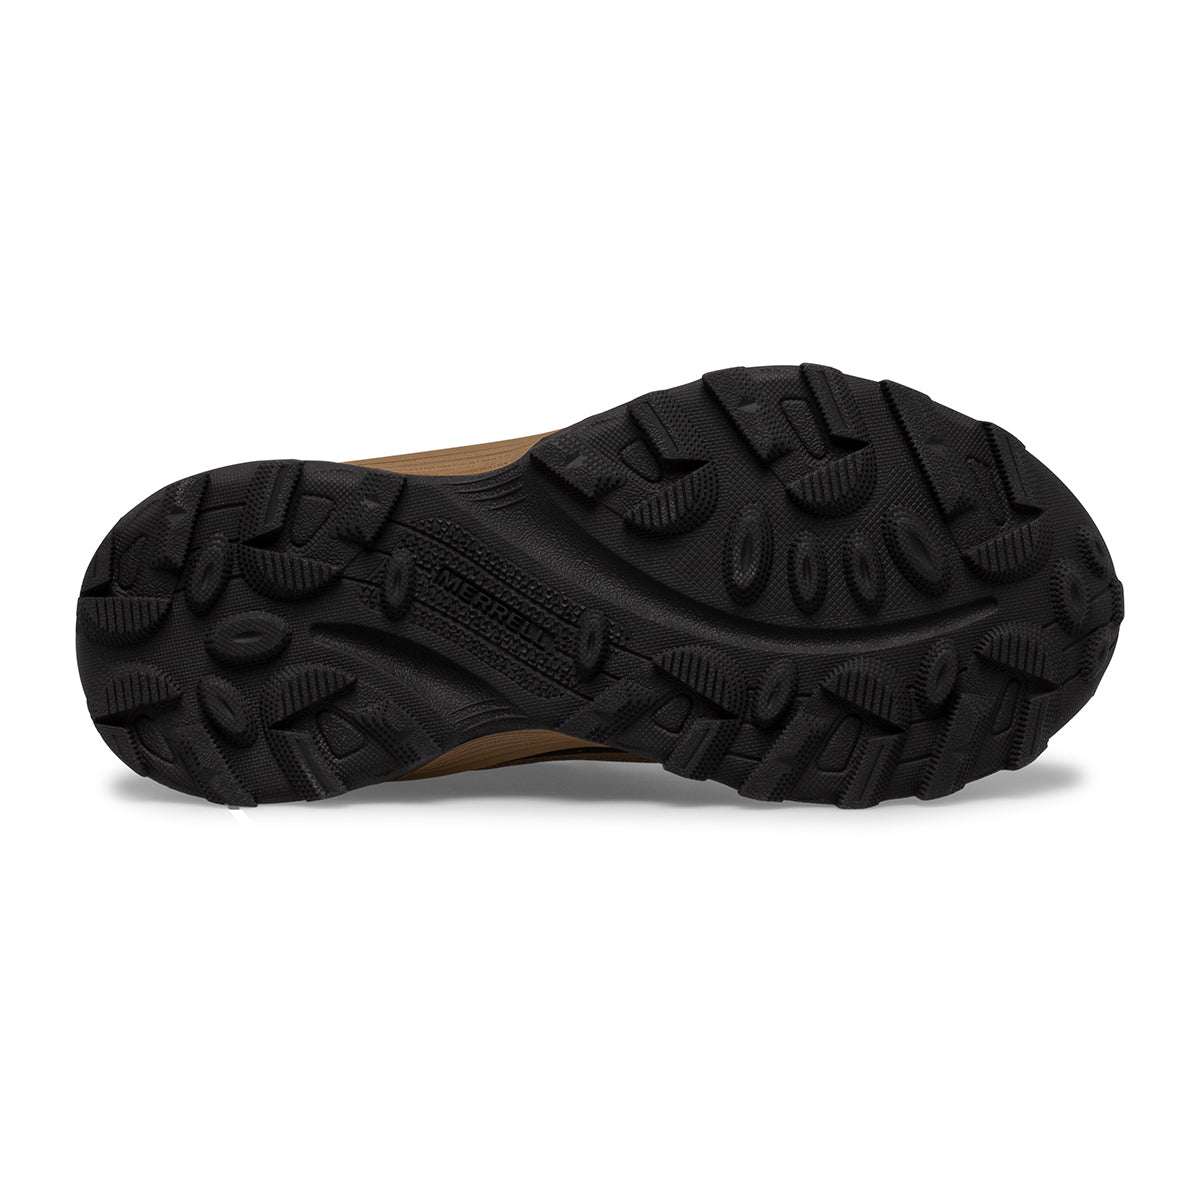 Moab Speed Low Waterproof Sneaker